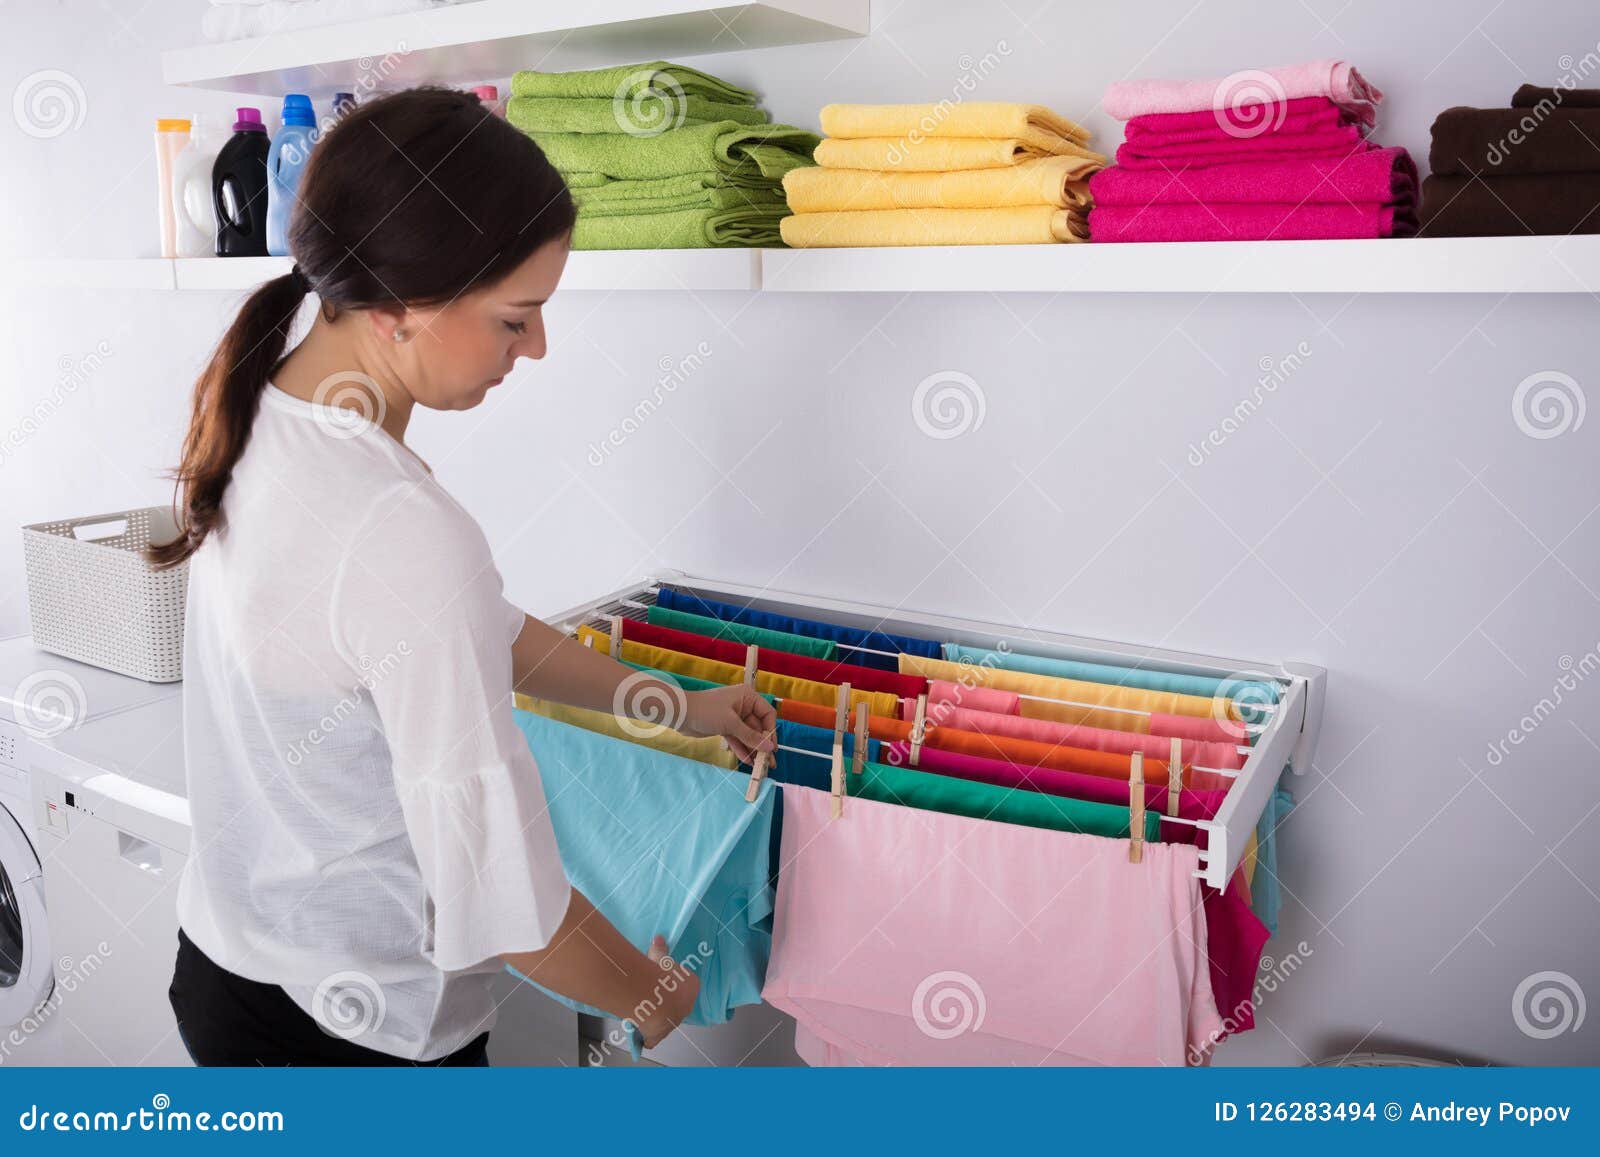 工作在洗衣店的美丽的少妇 库存图片. 图片 包括有 现代, 洗衣店, 大袋, 洗涤物, 姿势, 弄脏, 员工 - 132201813